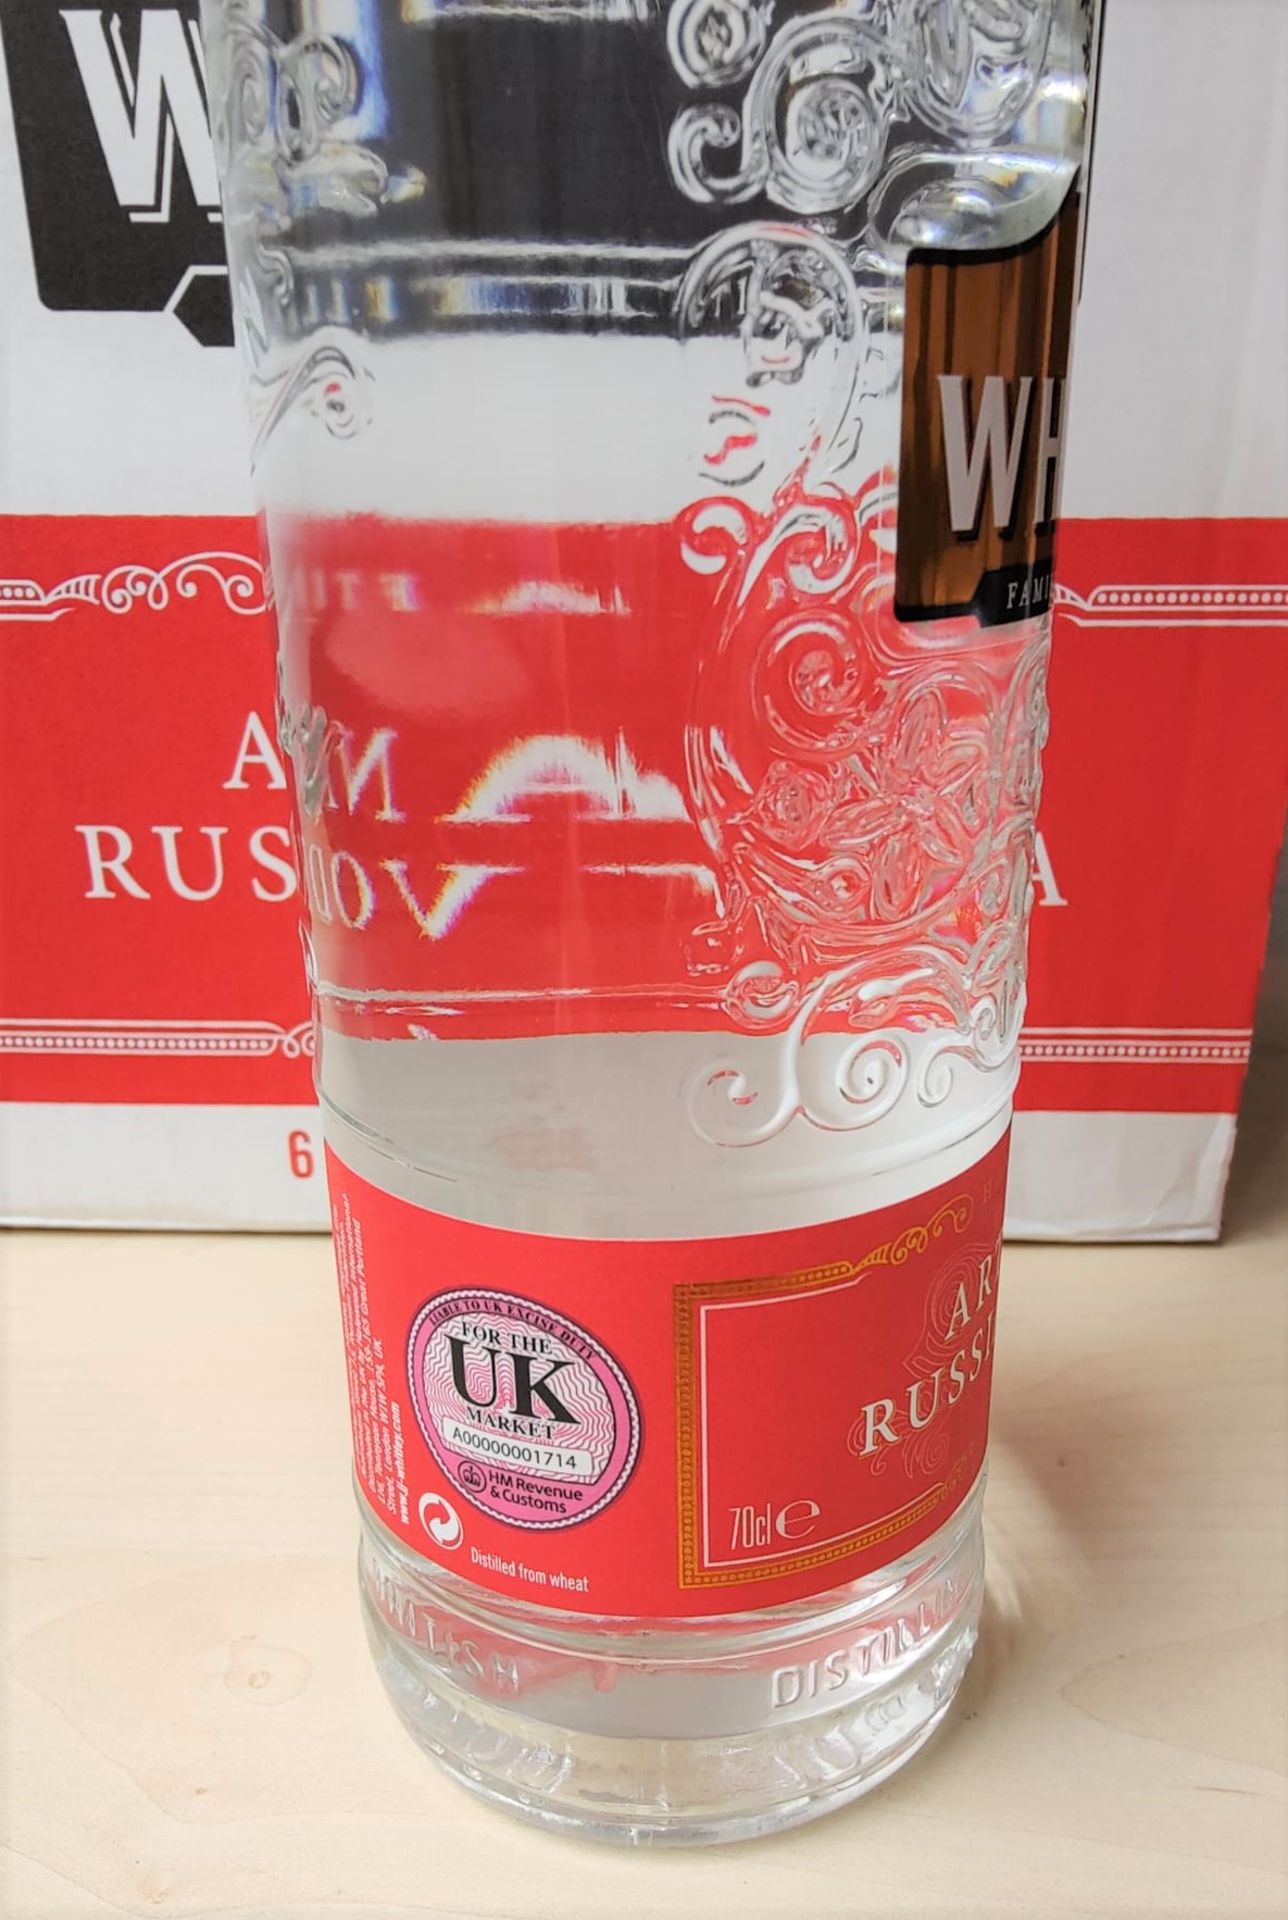 1 x Bottle of J.J Whitley Artisanal 70cl Vodka - Multi Award Winning Vodka - 38% Volume - New Sealed - Image 2 of 3